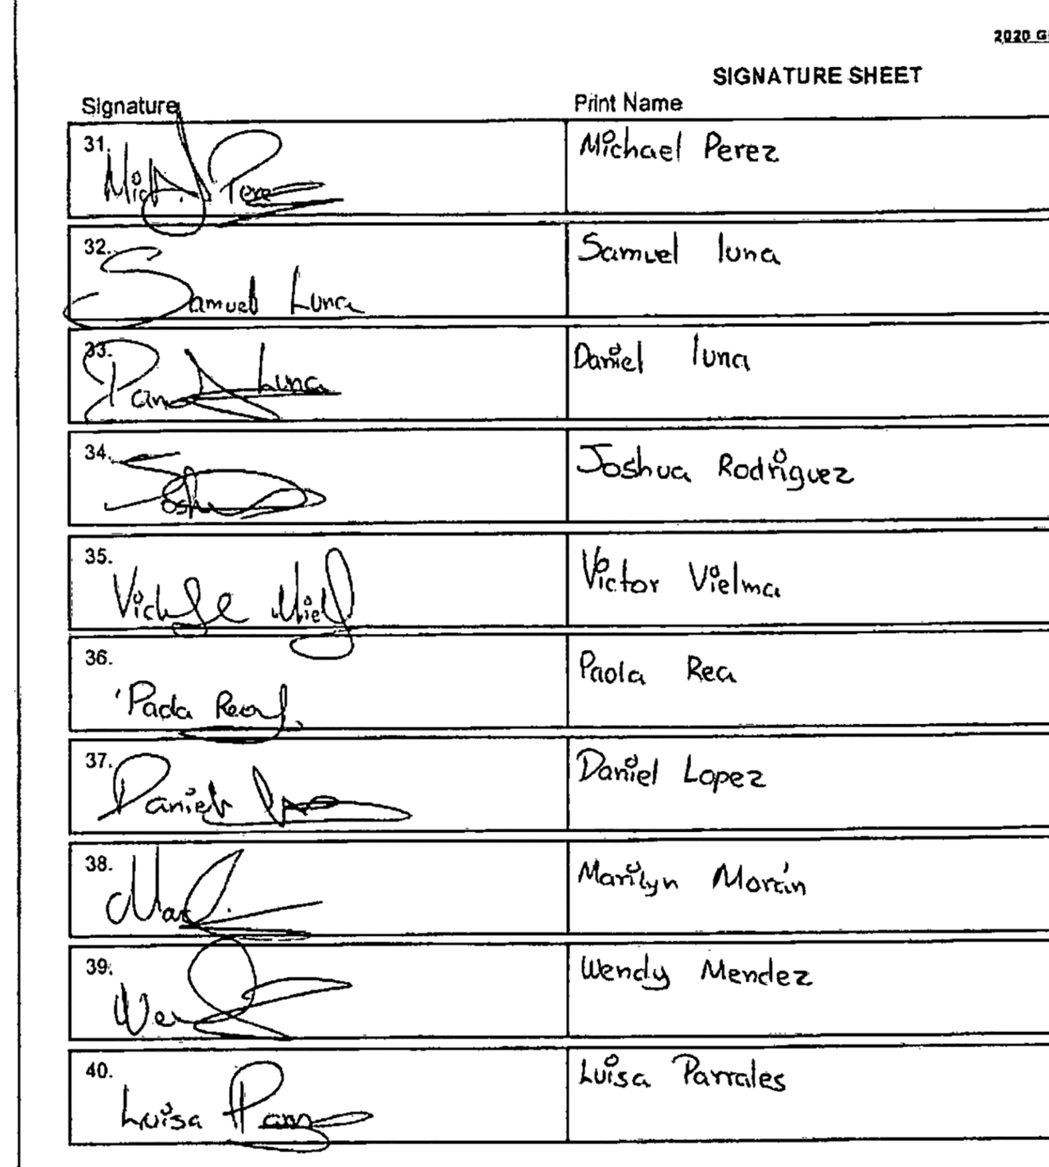 肯伊威斯特的參選總統連署，被認為有至少600個簽名筆跡相似，有造假之嫌。（美聯社...